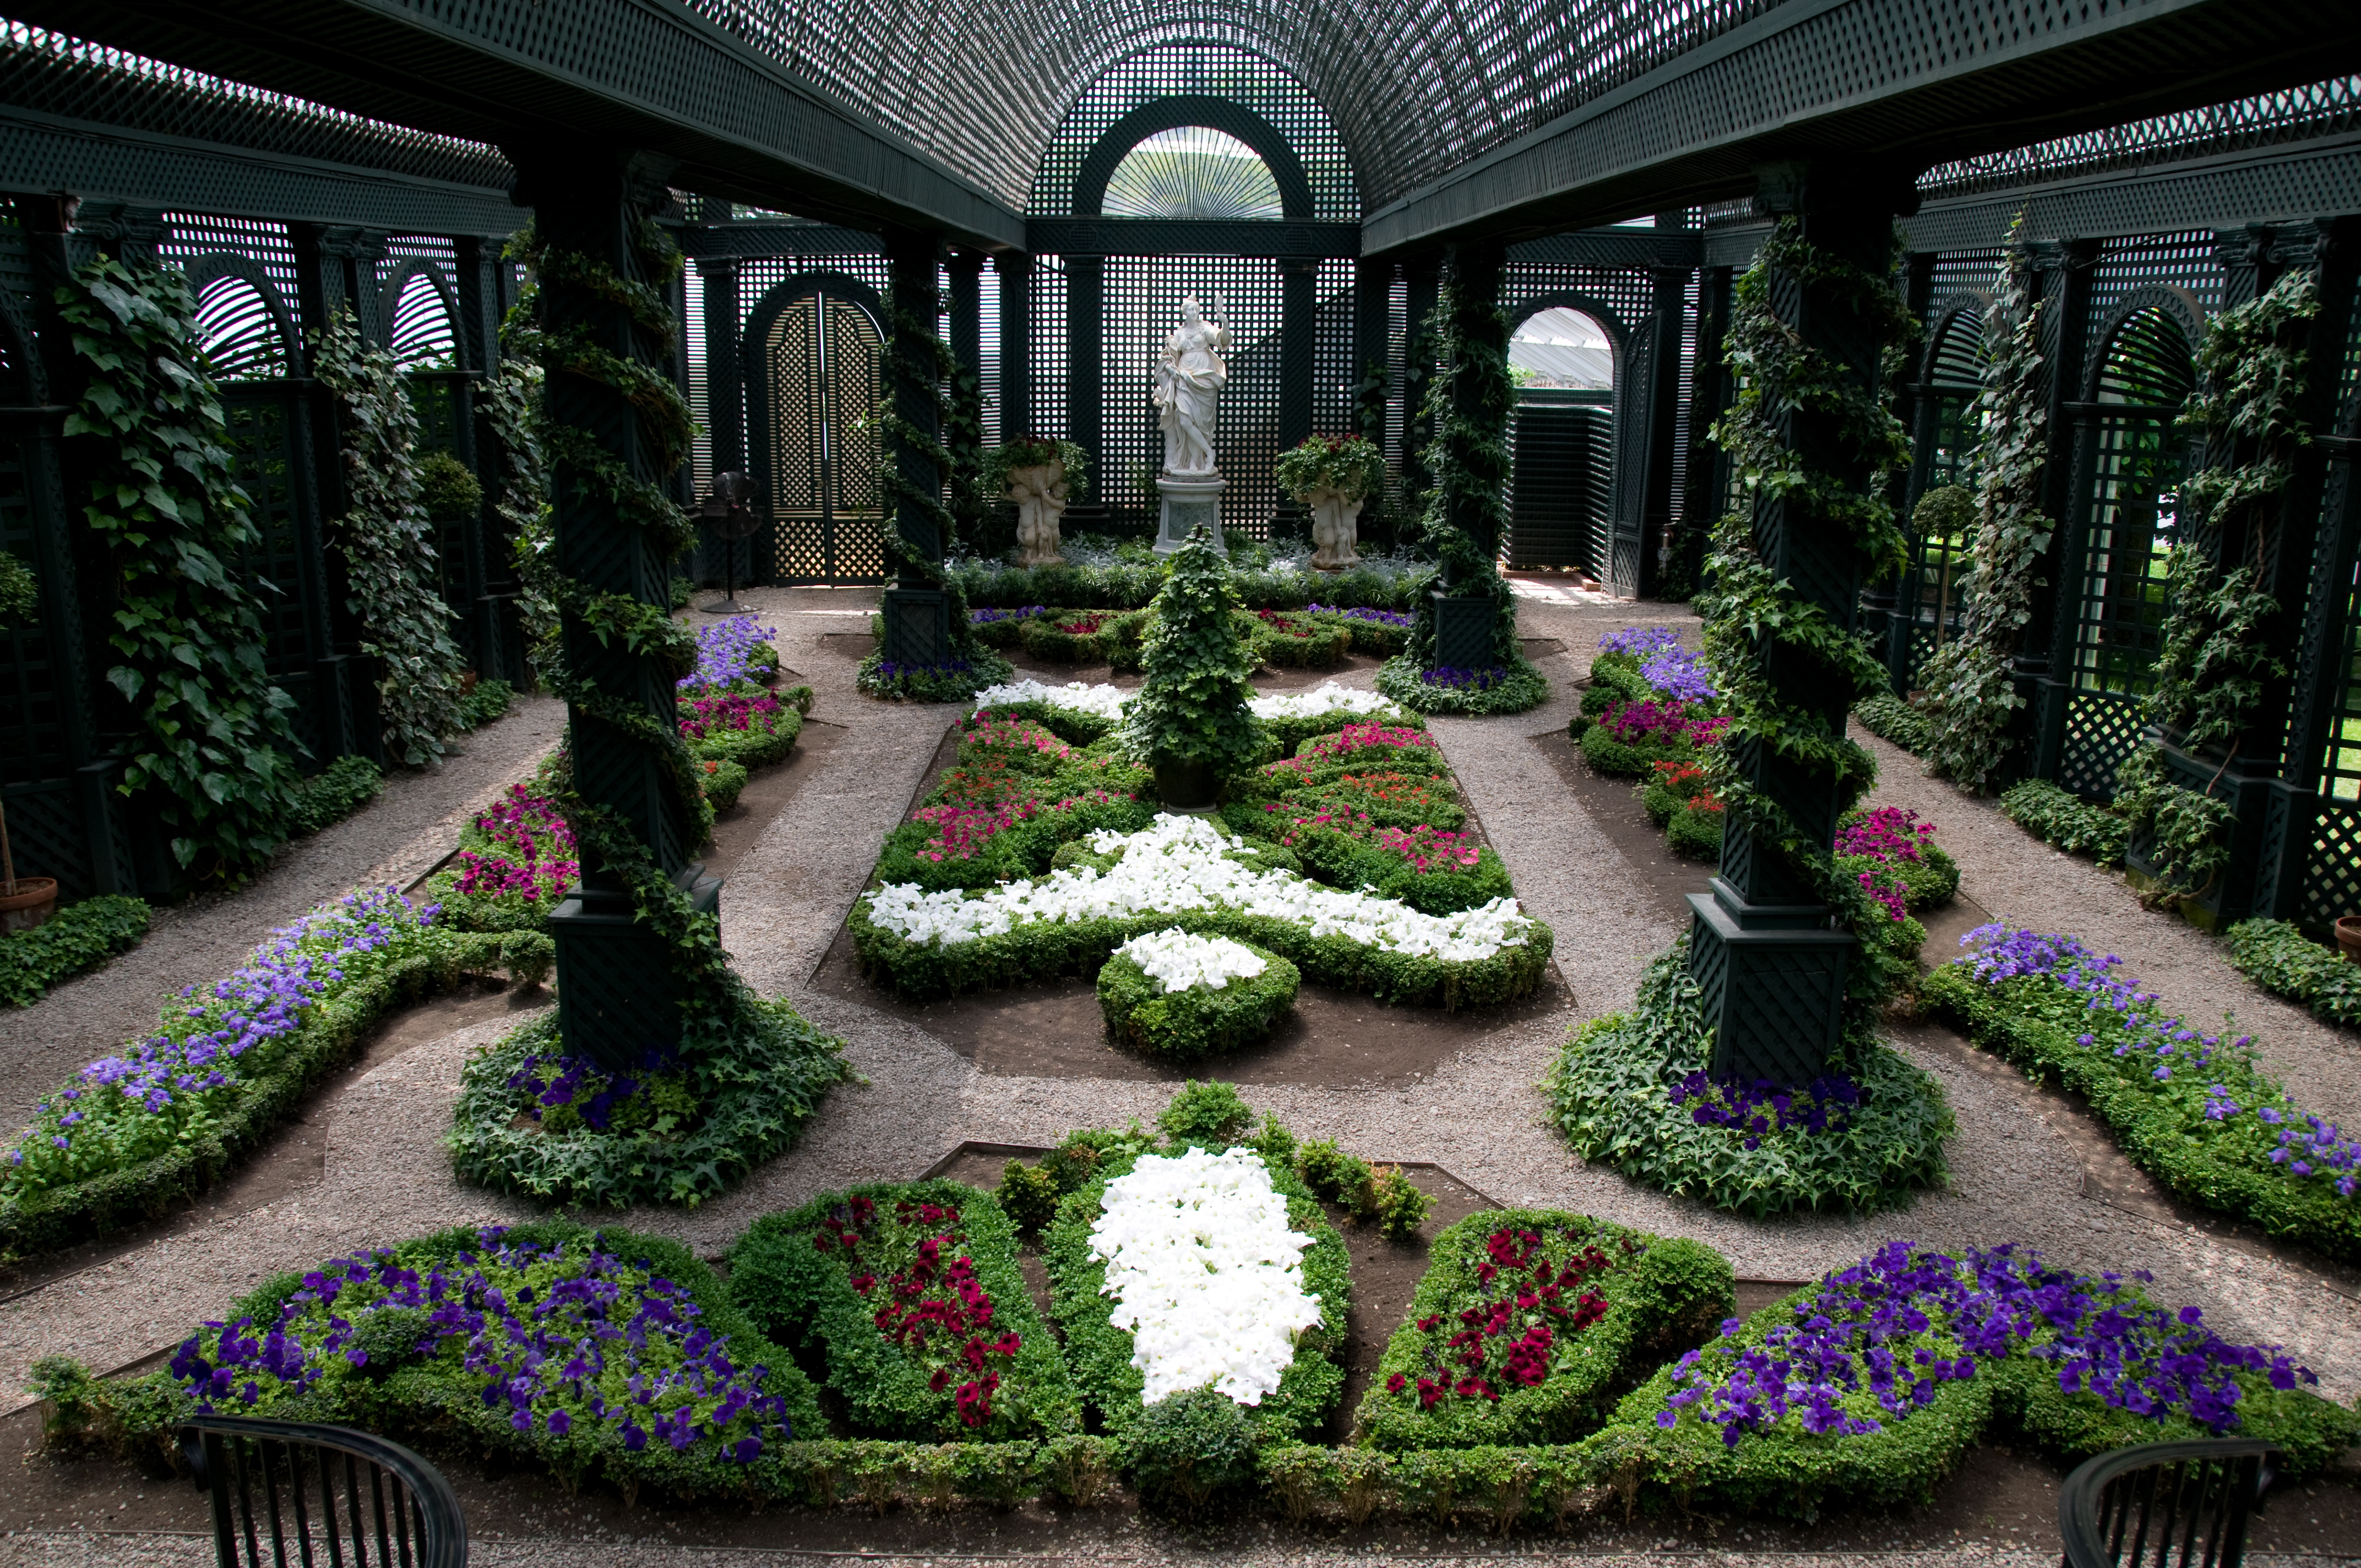 file-the-french-garden-at-duke-gardens-jpg-wikimedia-commons